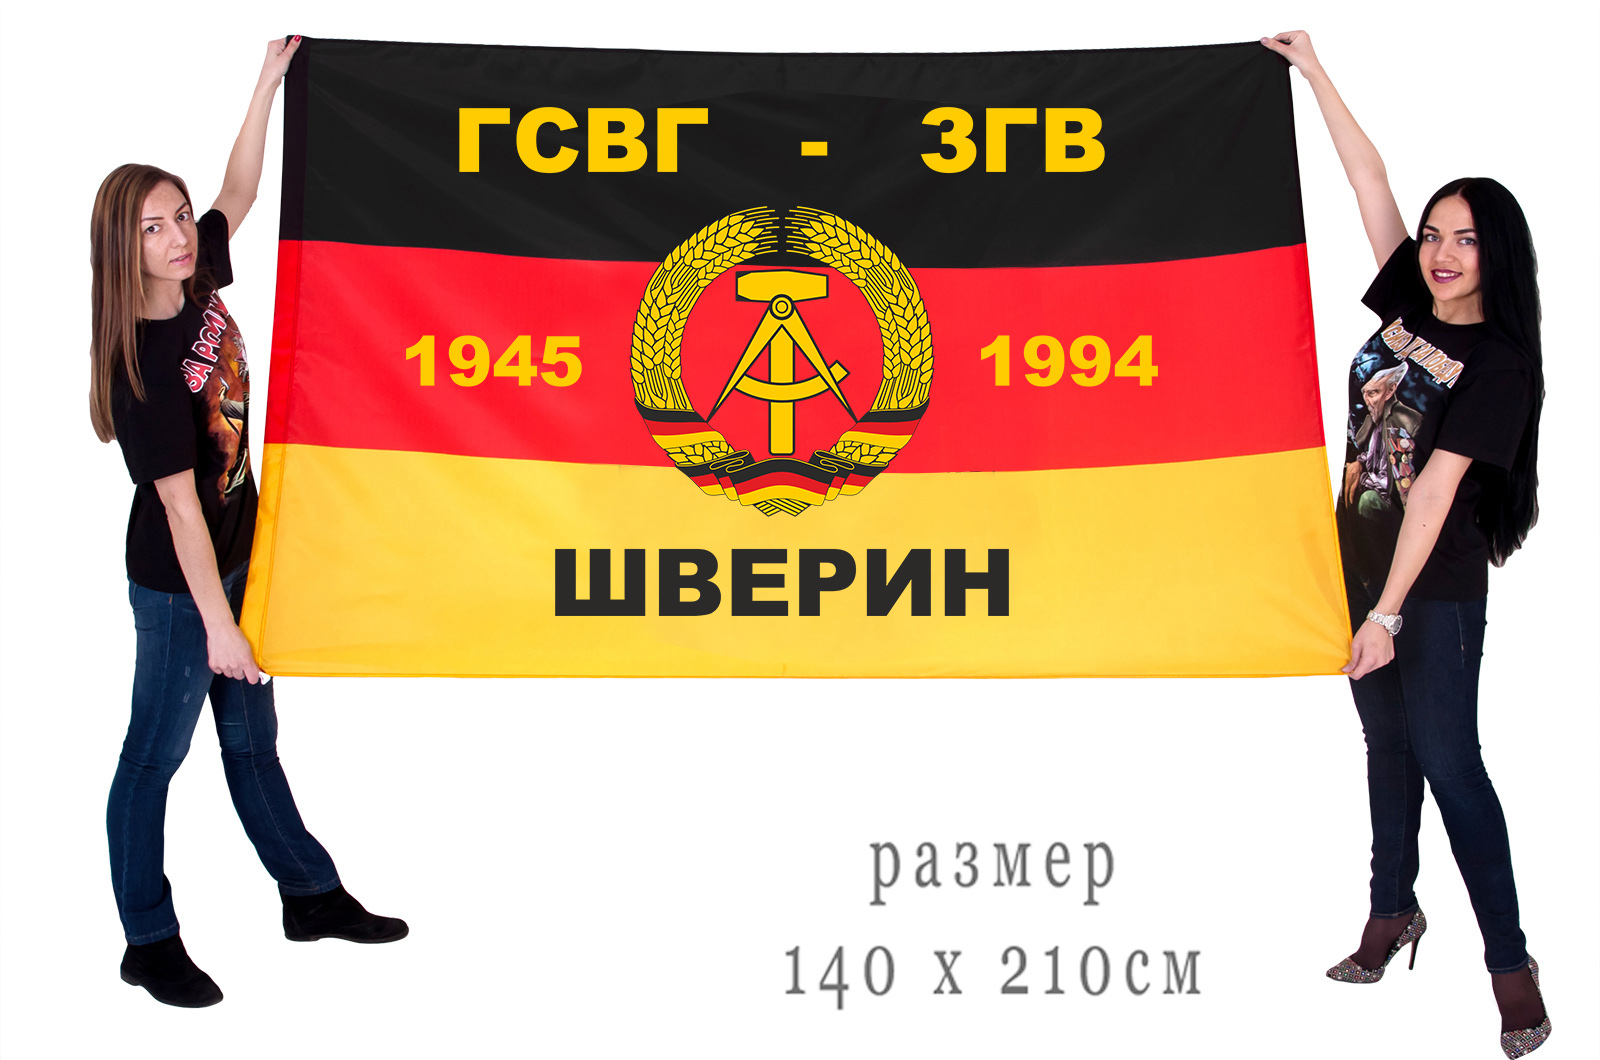 Большой флаг ГСВГ-ЗГВ "Шверин" 1945-1994